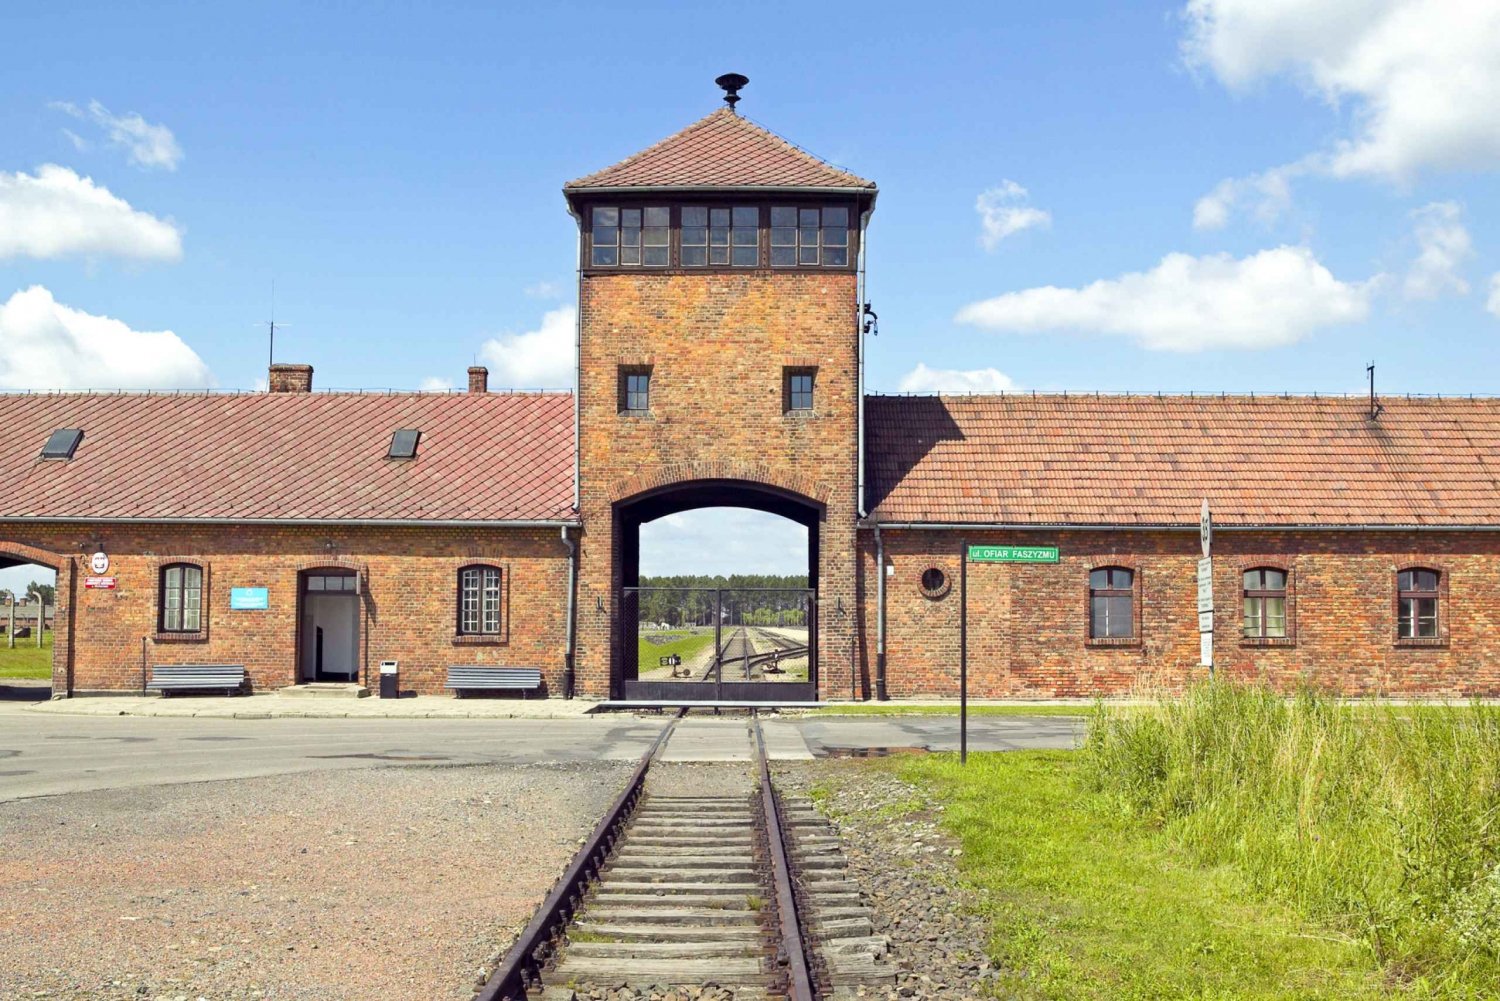 From Krakow: Auschwitz & Wieliczka Salt Mine Guided Tour